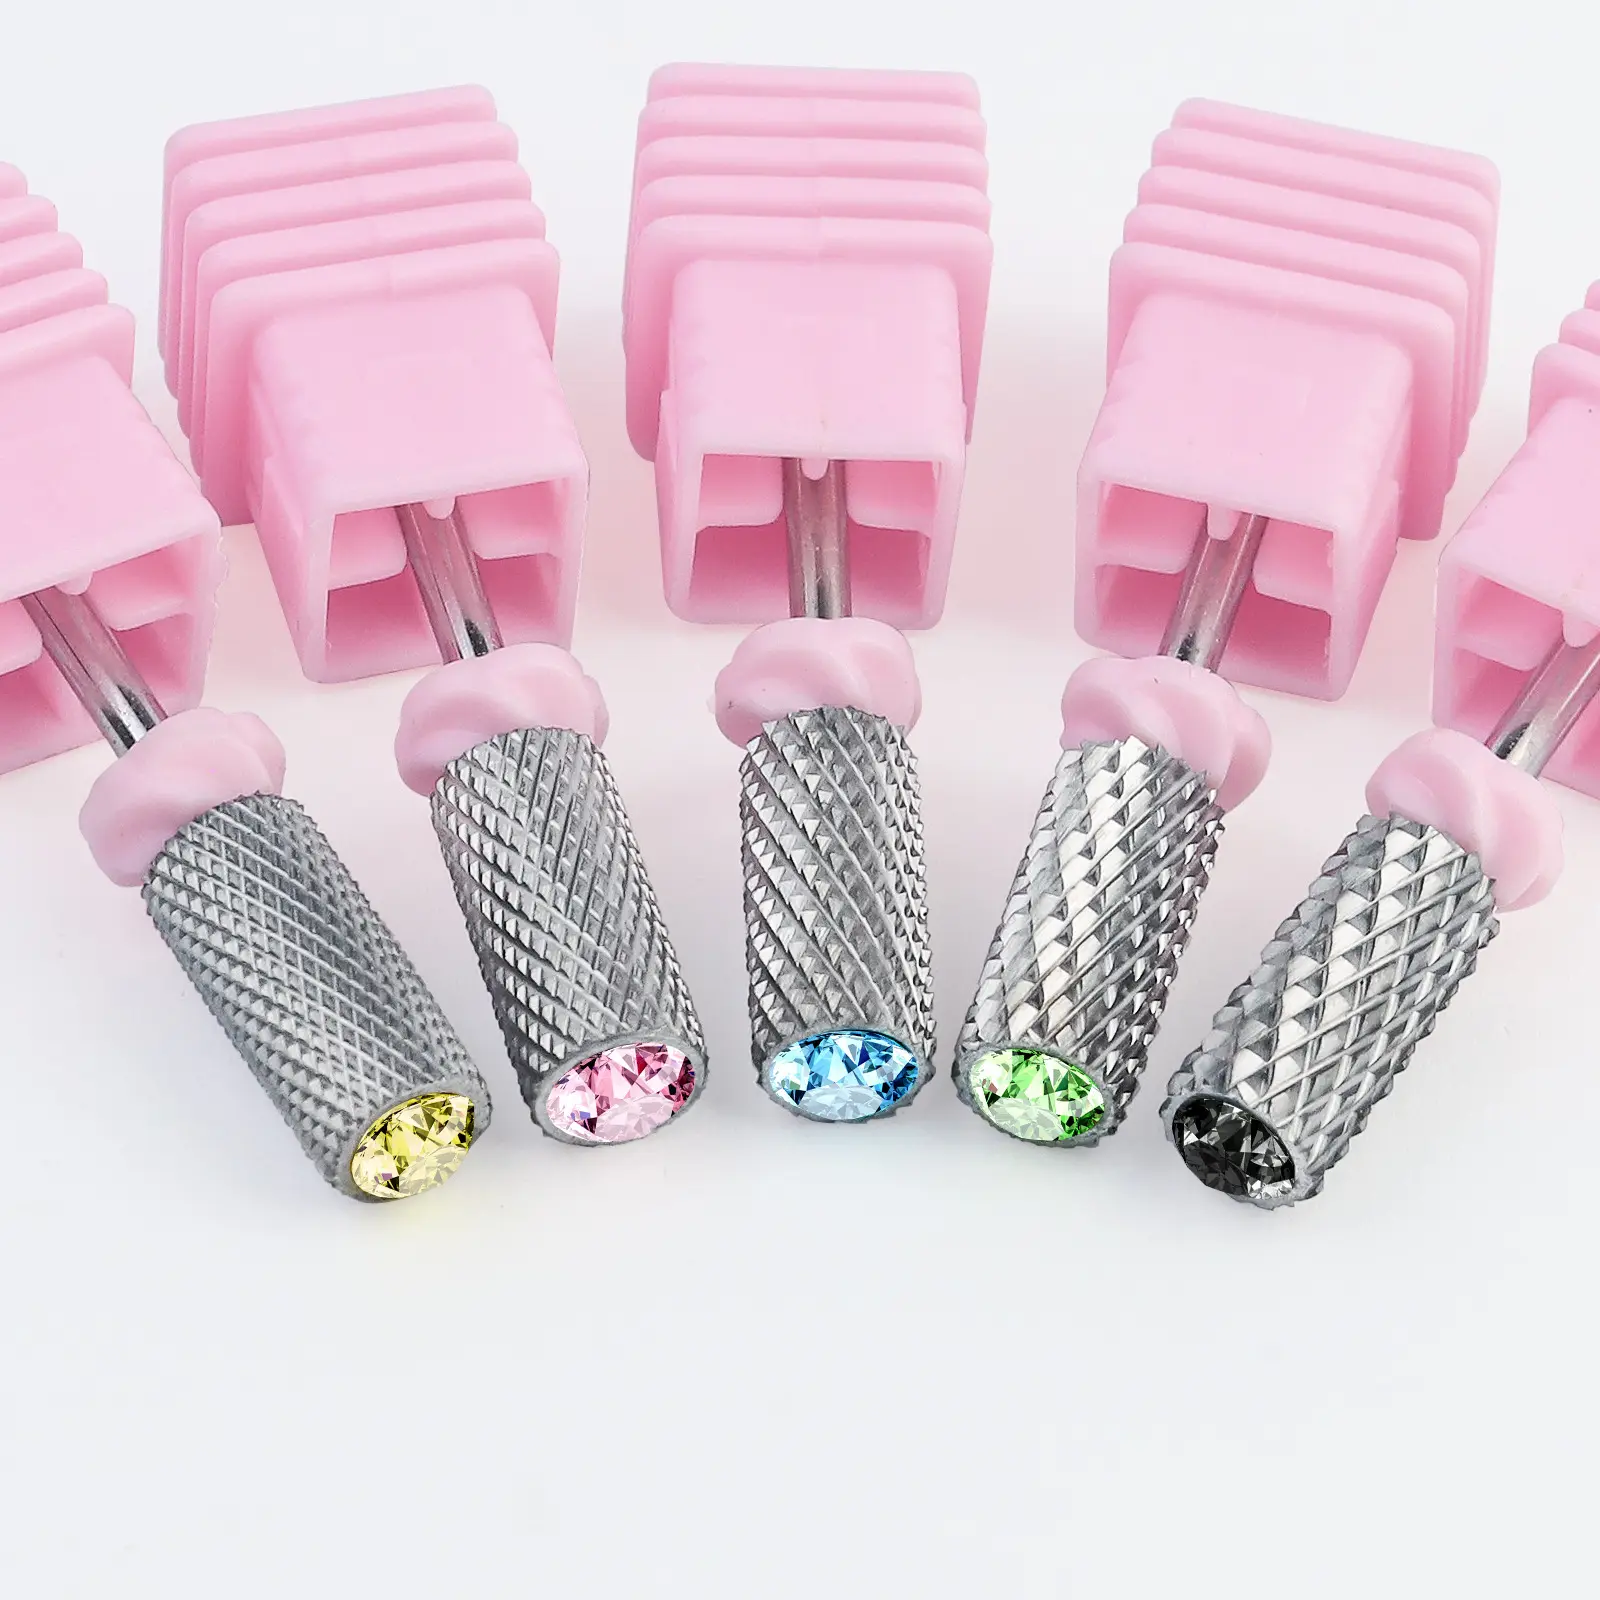 신제품 다이아몬드 텅스텐 스틸 네일 드릴 비트 핑크 케이스 폴란드어 기계 그라인딩 헤드 네일 드릴 비트